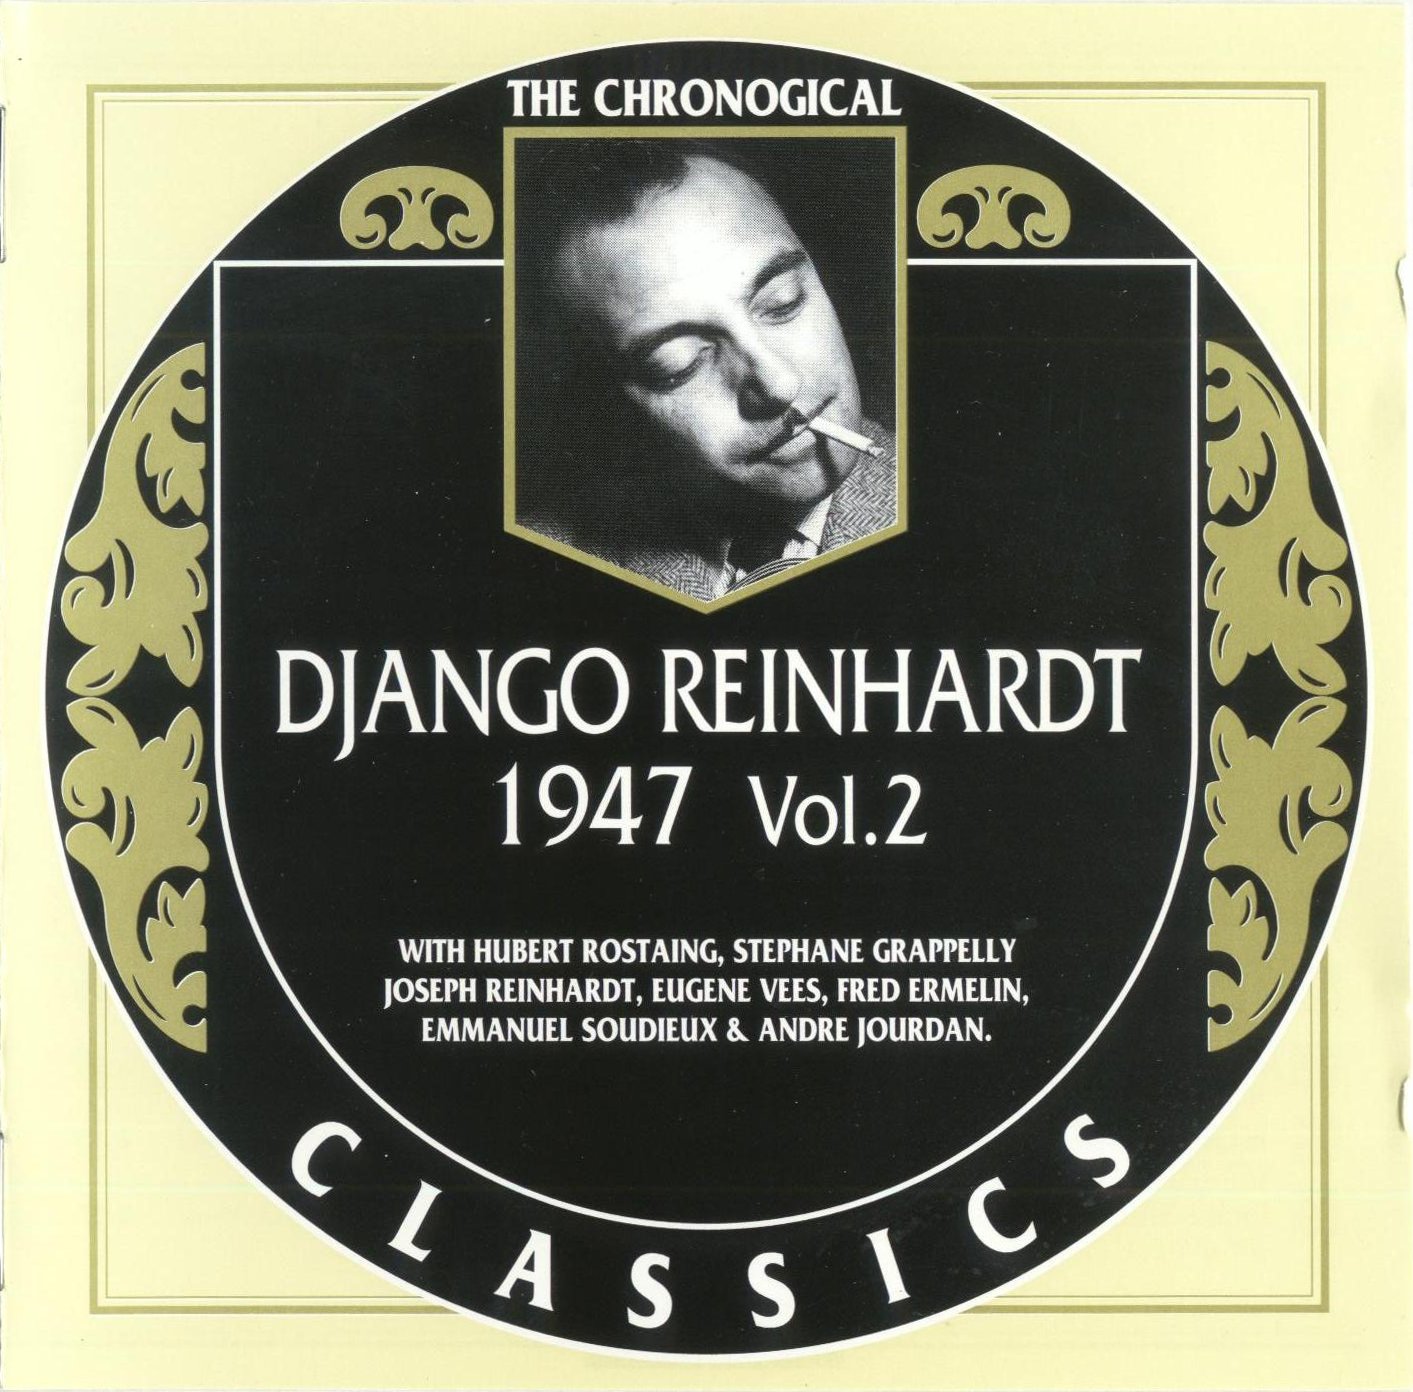 Django Reinhardt image and pictorial